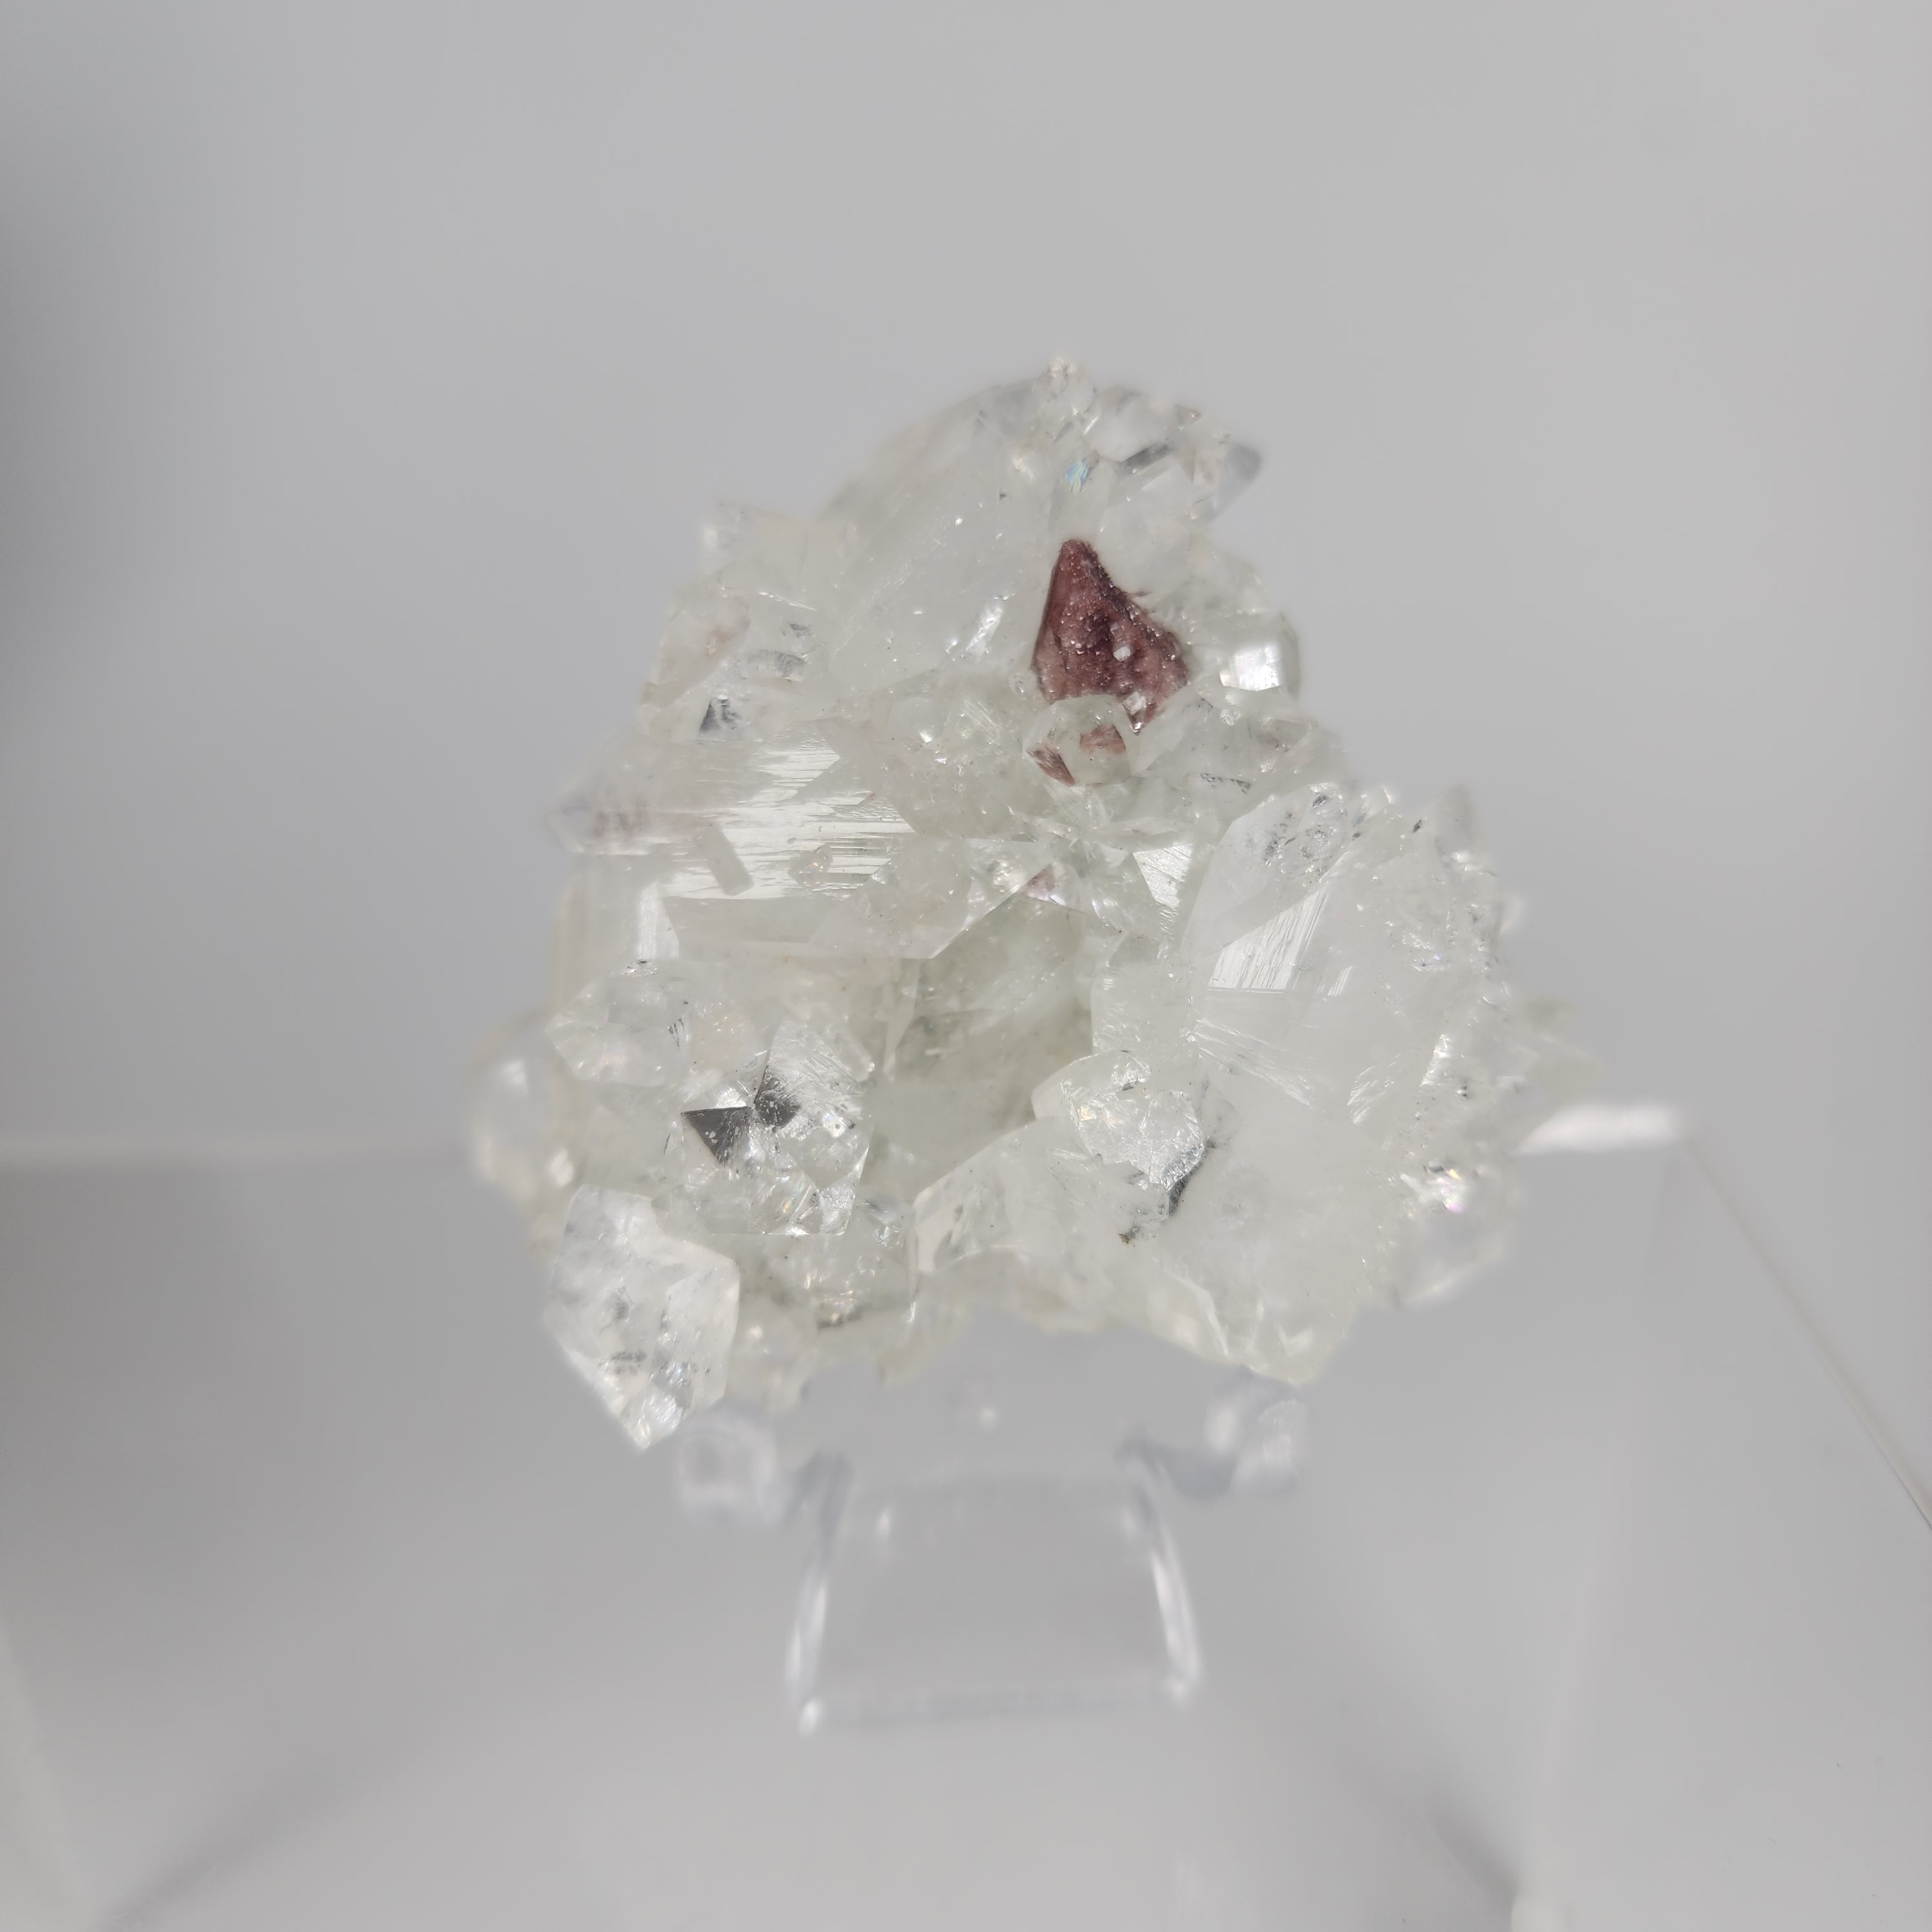 High Quality Diamond Apophyllite Specimen #2 with Heulandite from Jalgaon District, Maharashtra, India